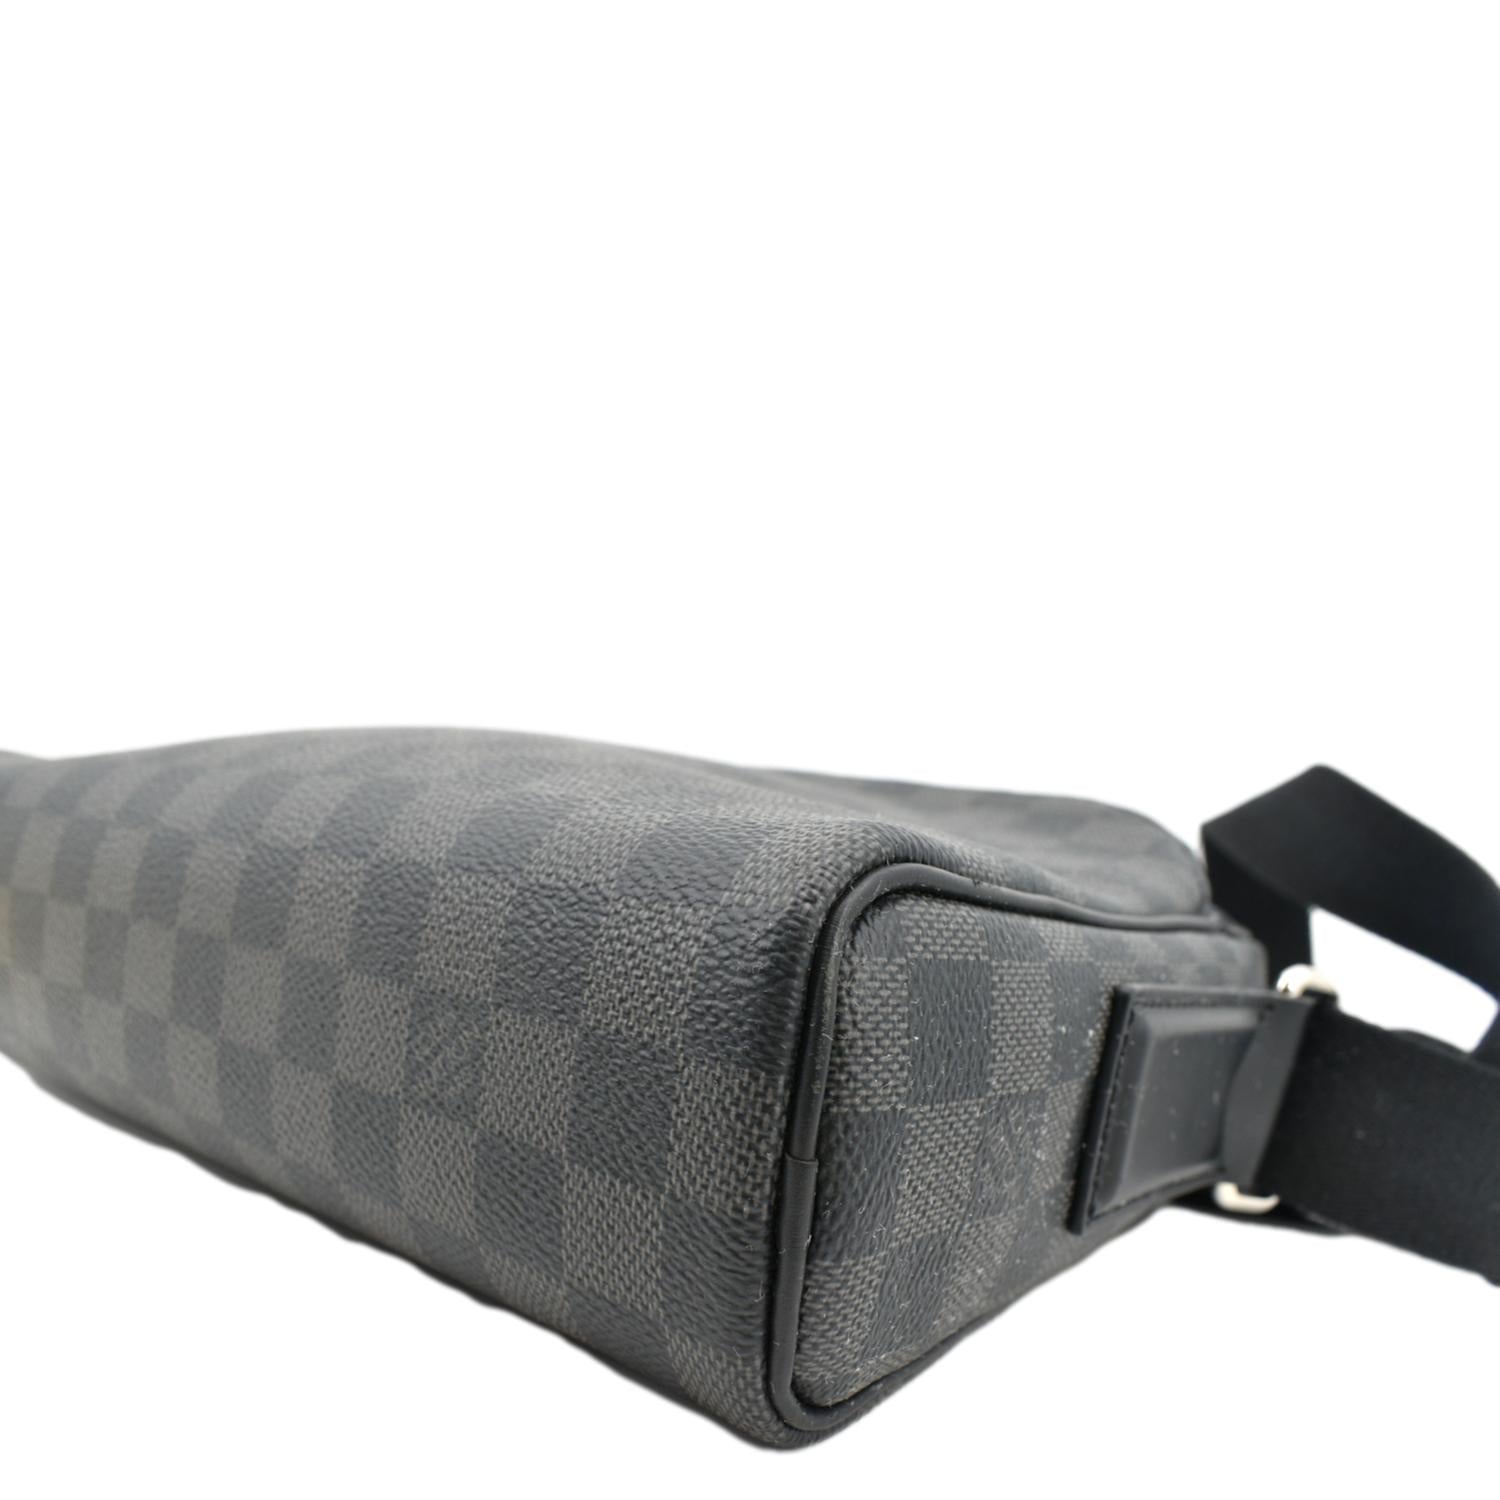 3ac2810] Auth Louis Vuitton Shoulder Bag Damier Graphite Dayton PM N41408